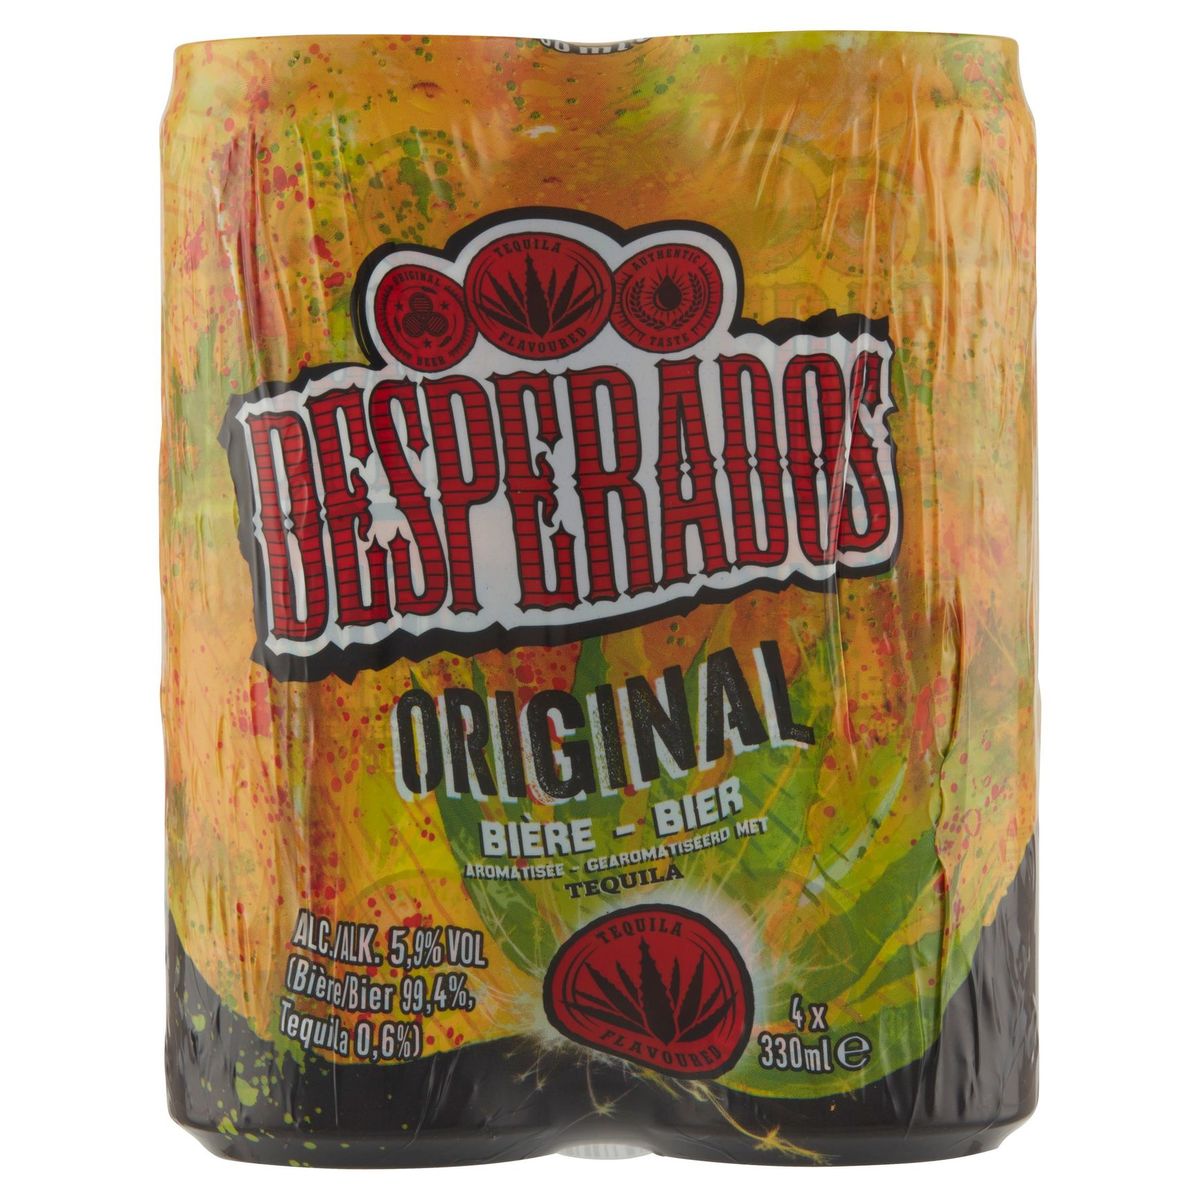 Desperados Original Bière Aromatisée avec Tequila 4 x 330 ml